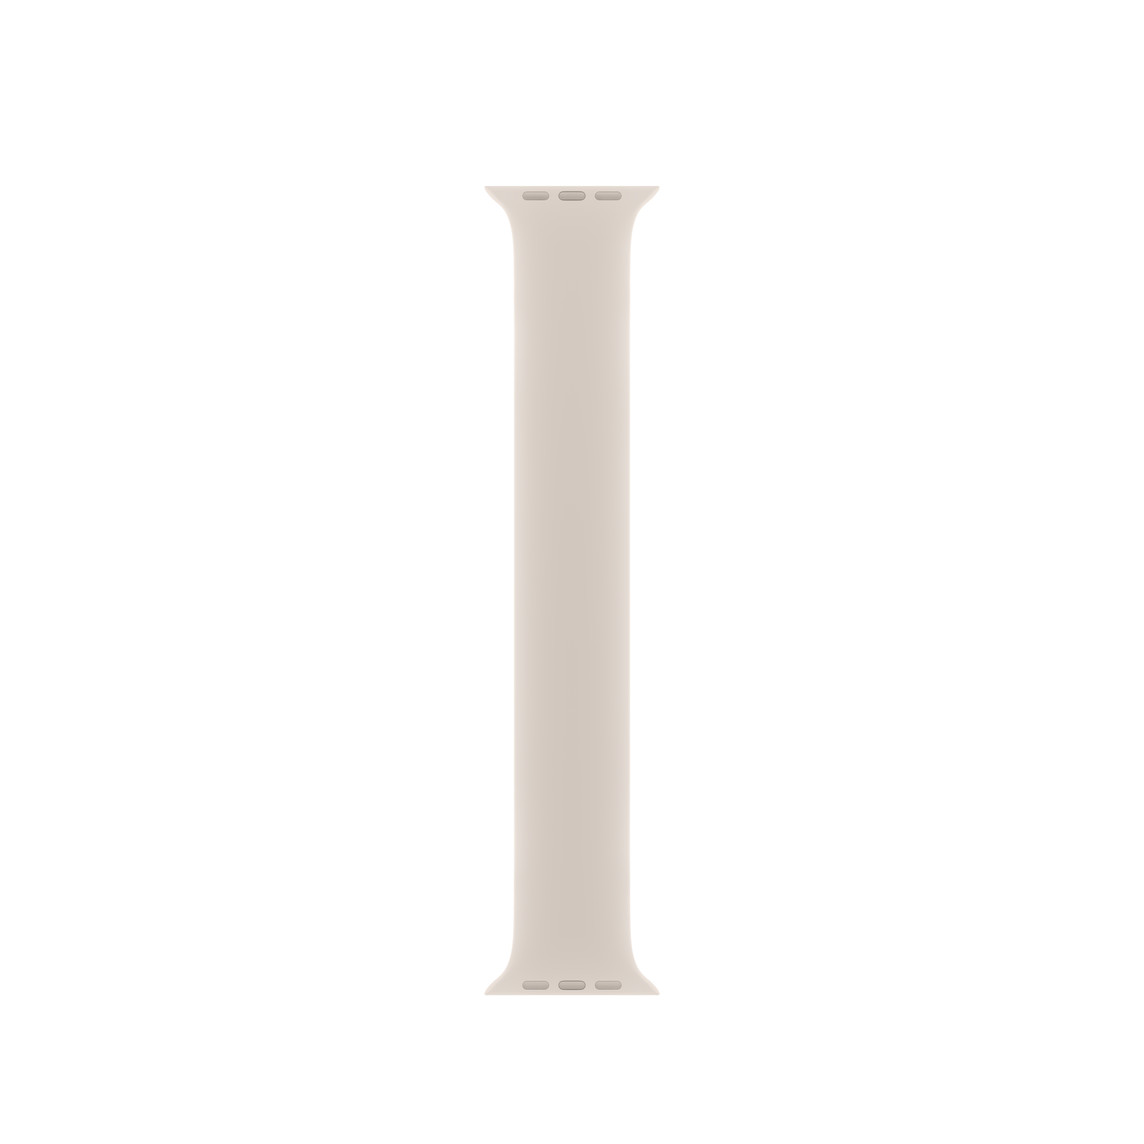 Correa uniloop blanco estelar, hecha de goma de silicona suave sin hebillas ni cierres